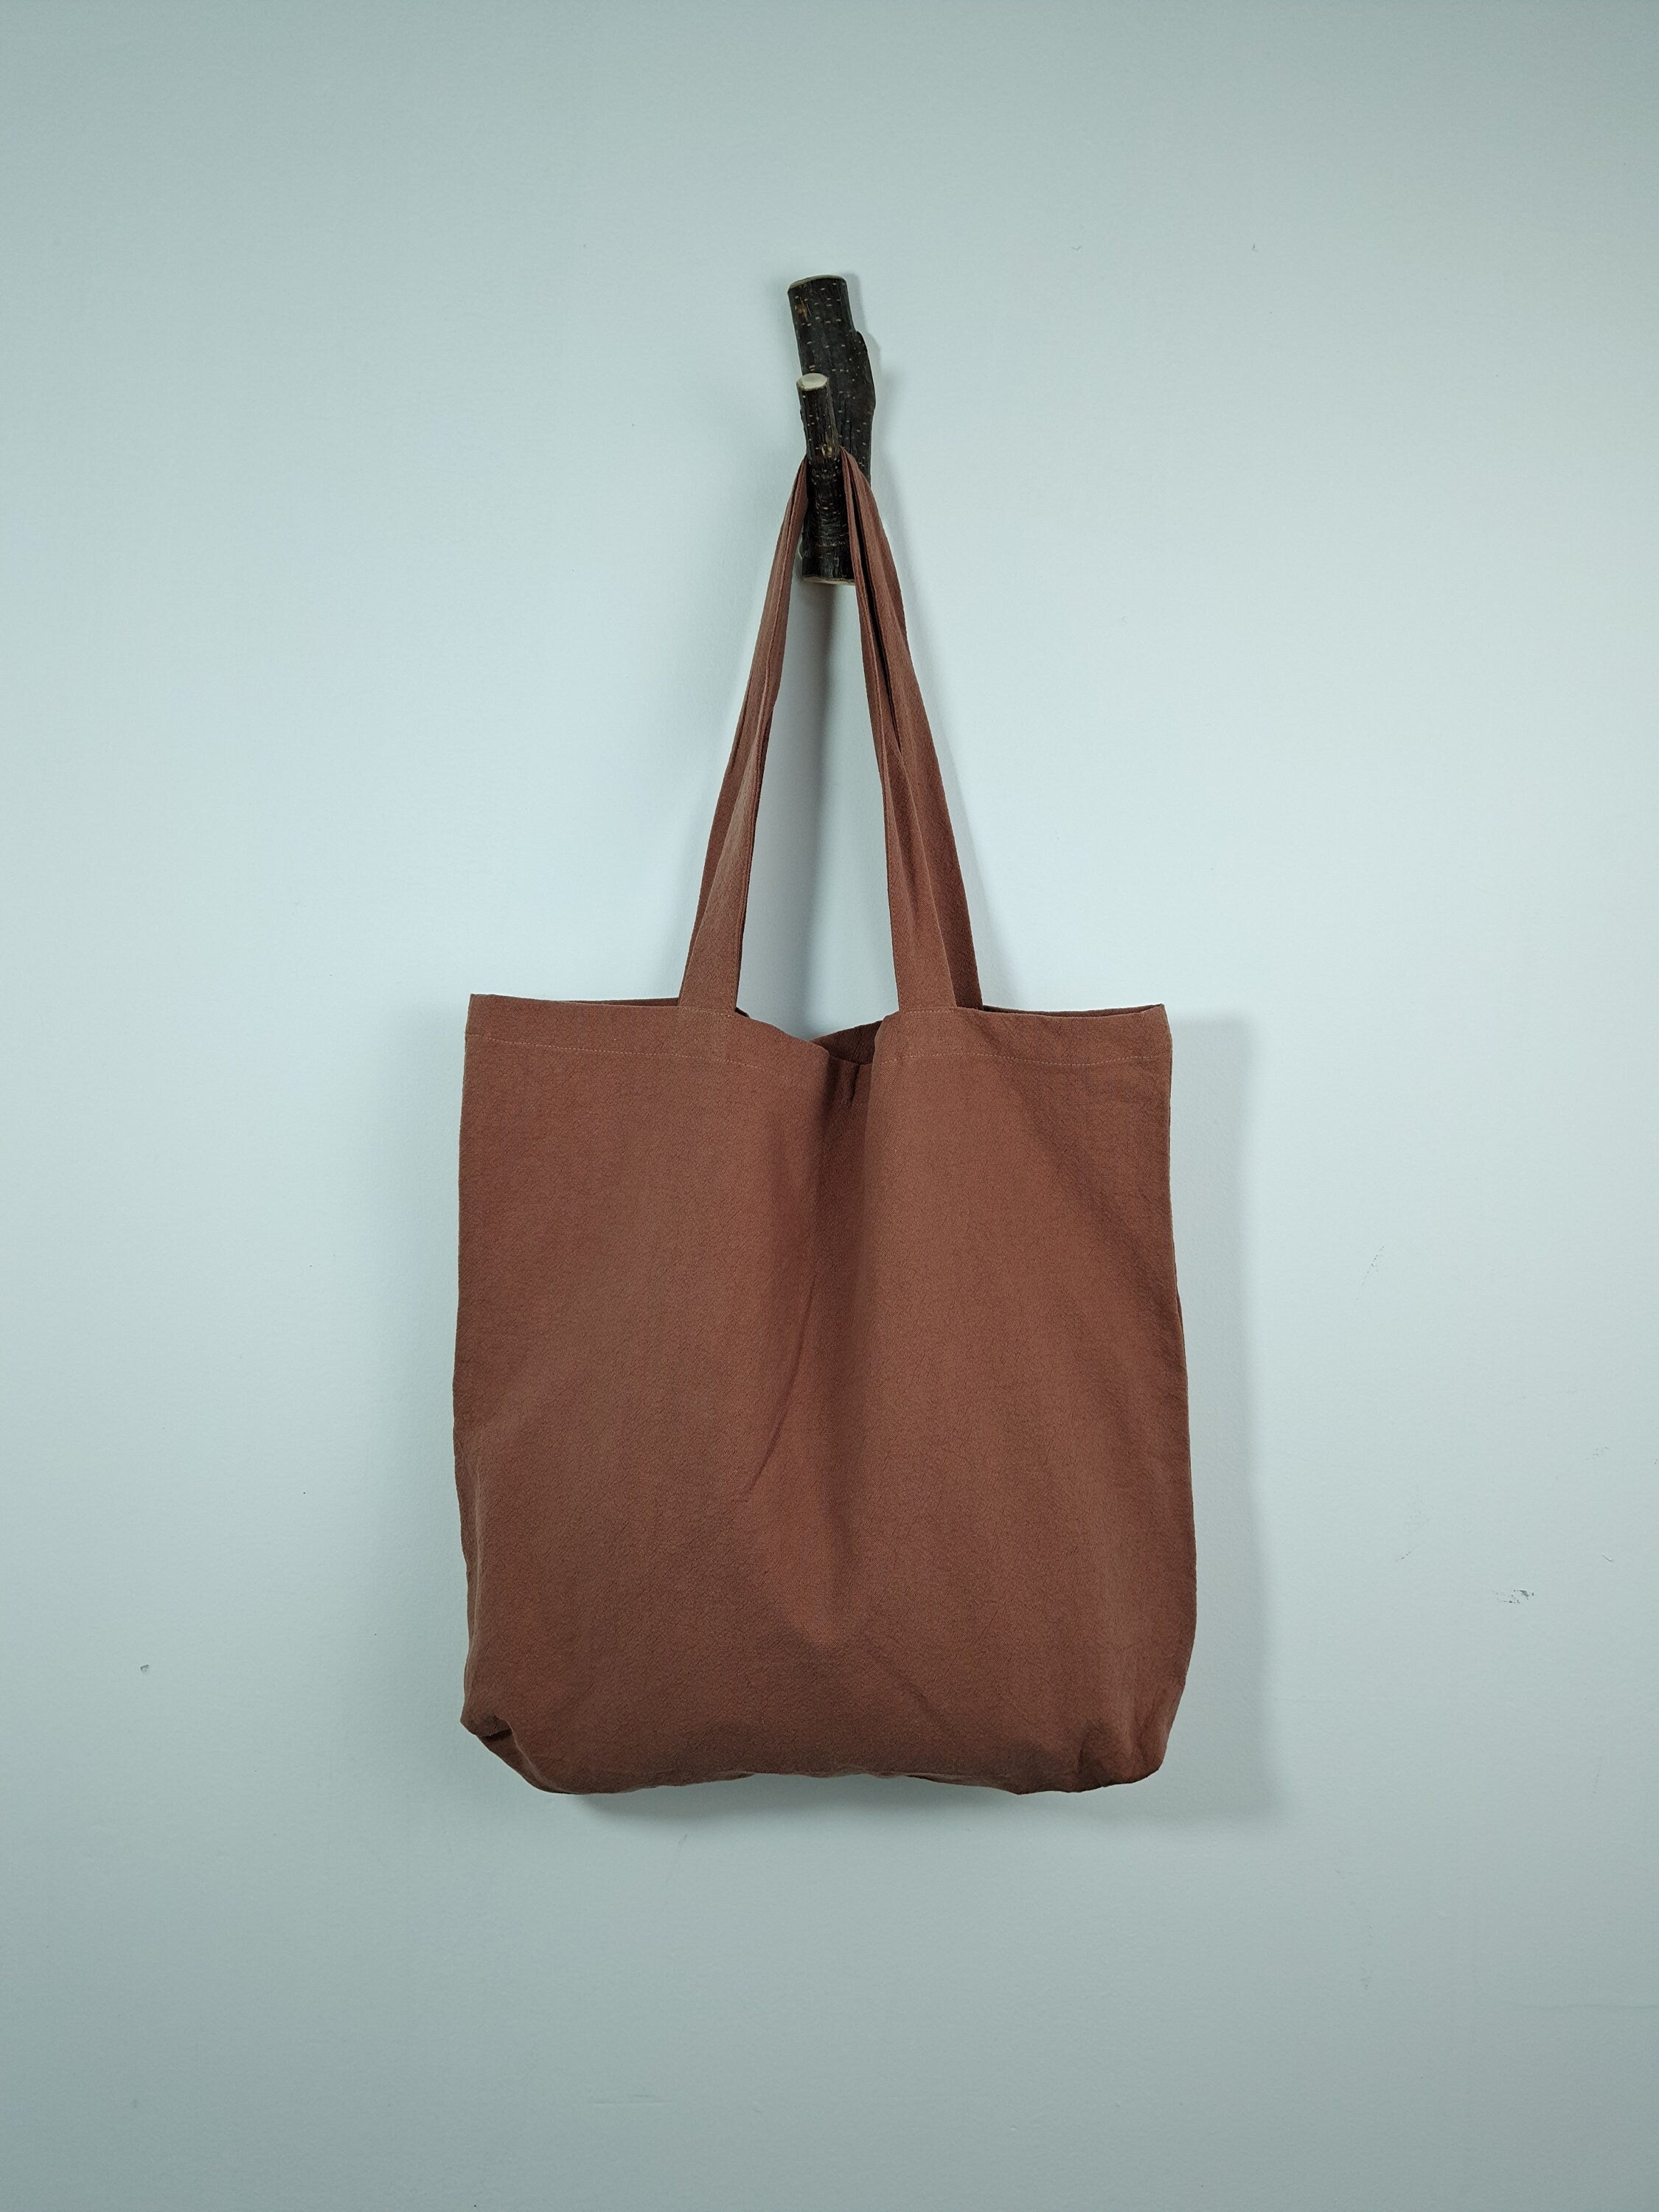 Brown red  tote bag, cotton linen tote bag, market bag, linen bag, shopping shoulder bag， travel bag，beach bag，Literary and elegant